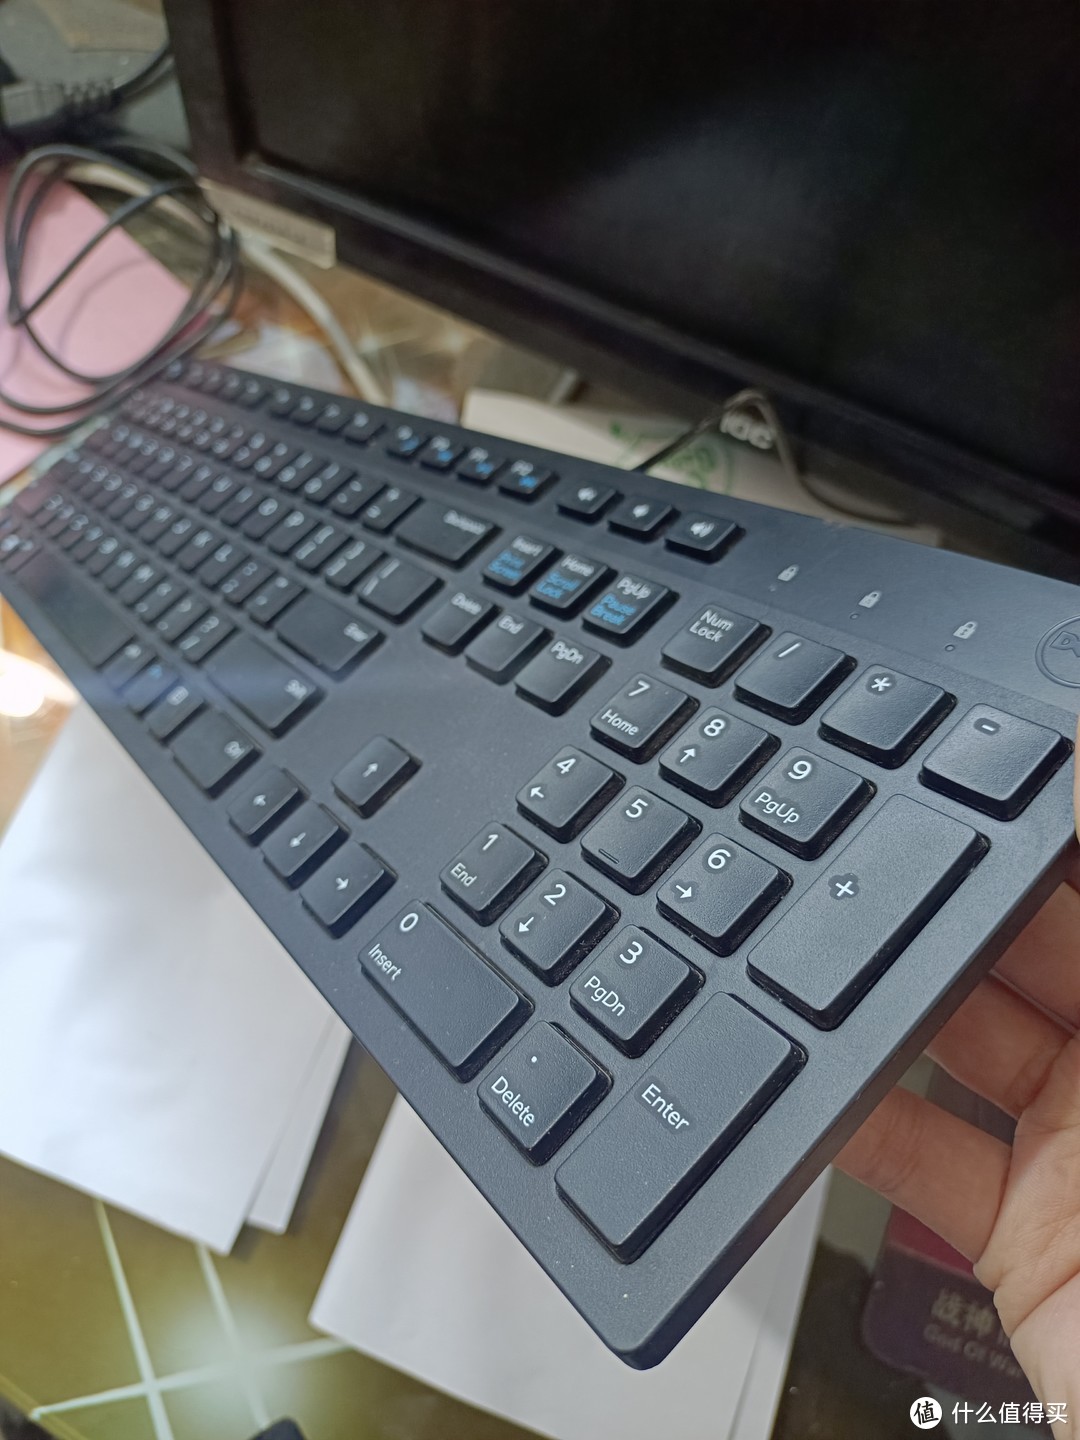 网购的黑色电脑键盘，反应灵敏简约大气，物有所值